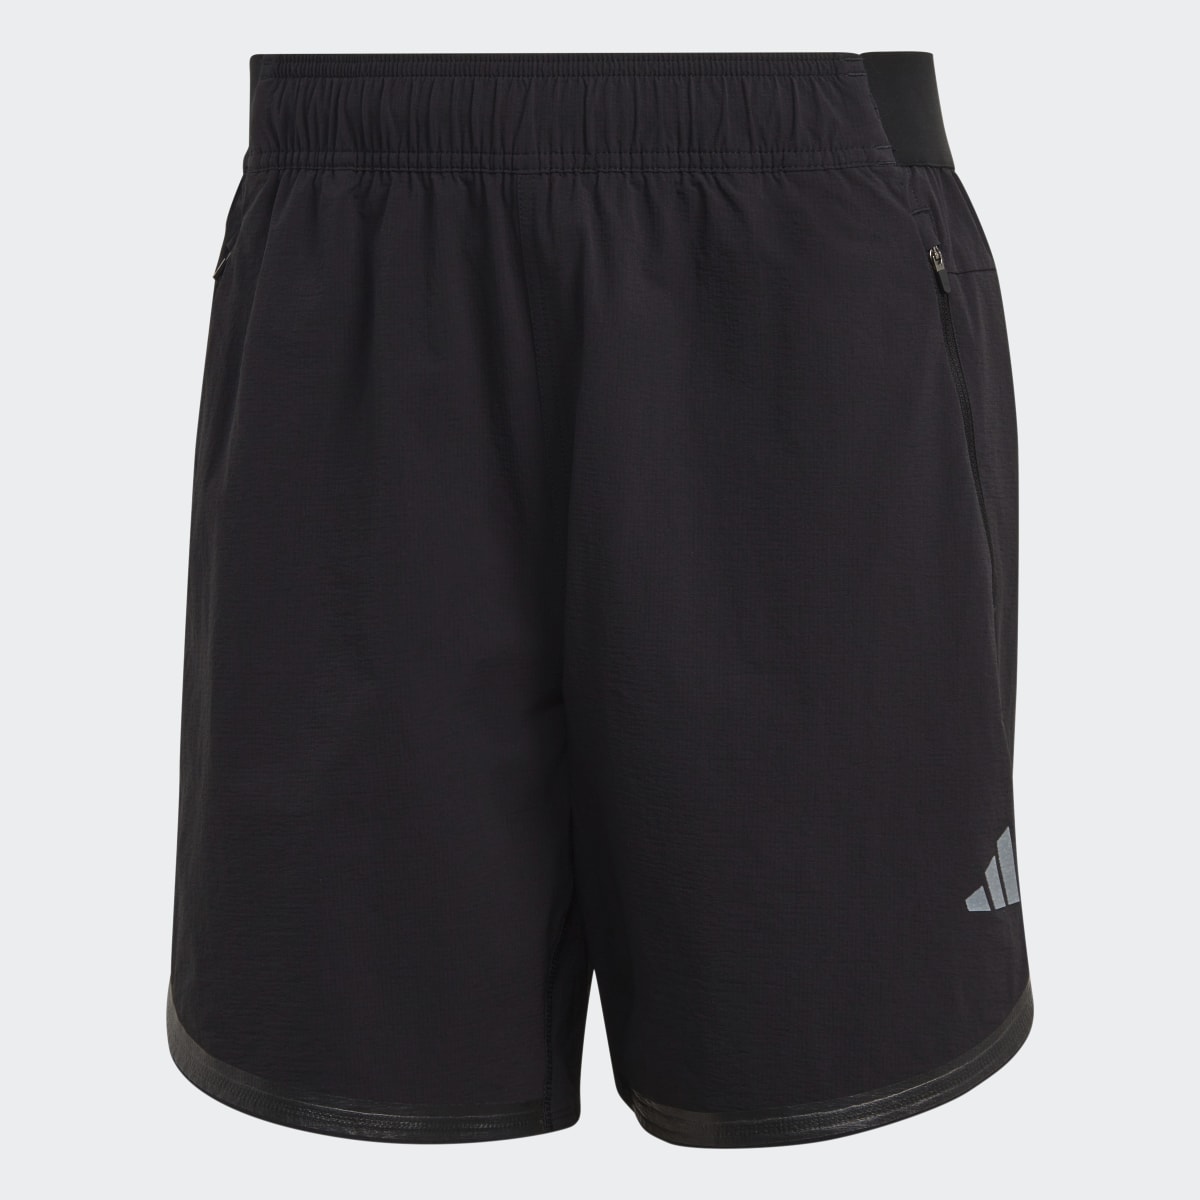 Adidas Designed for Training CORDURA® Workout Shorts. 4